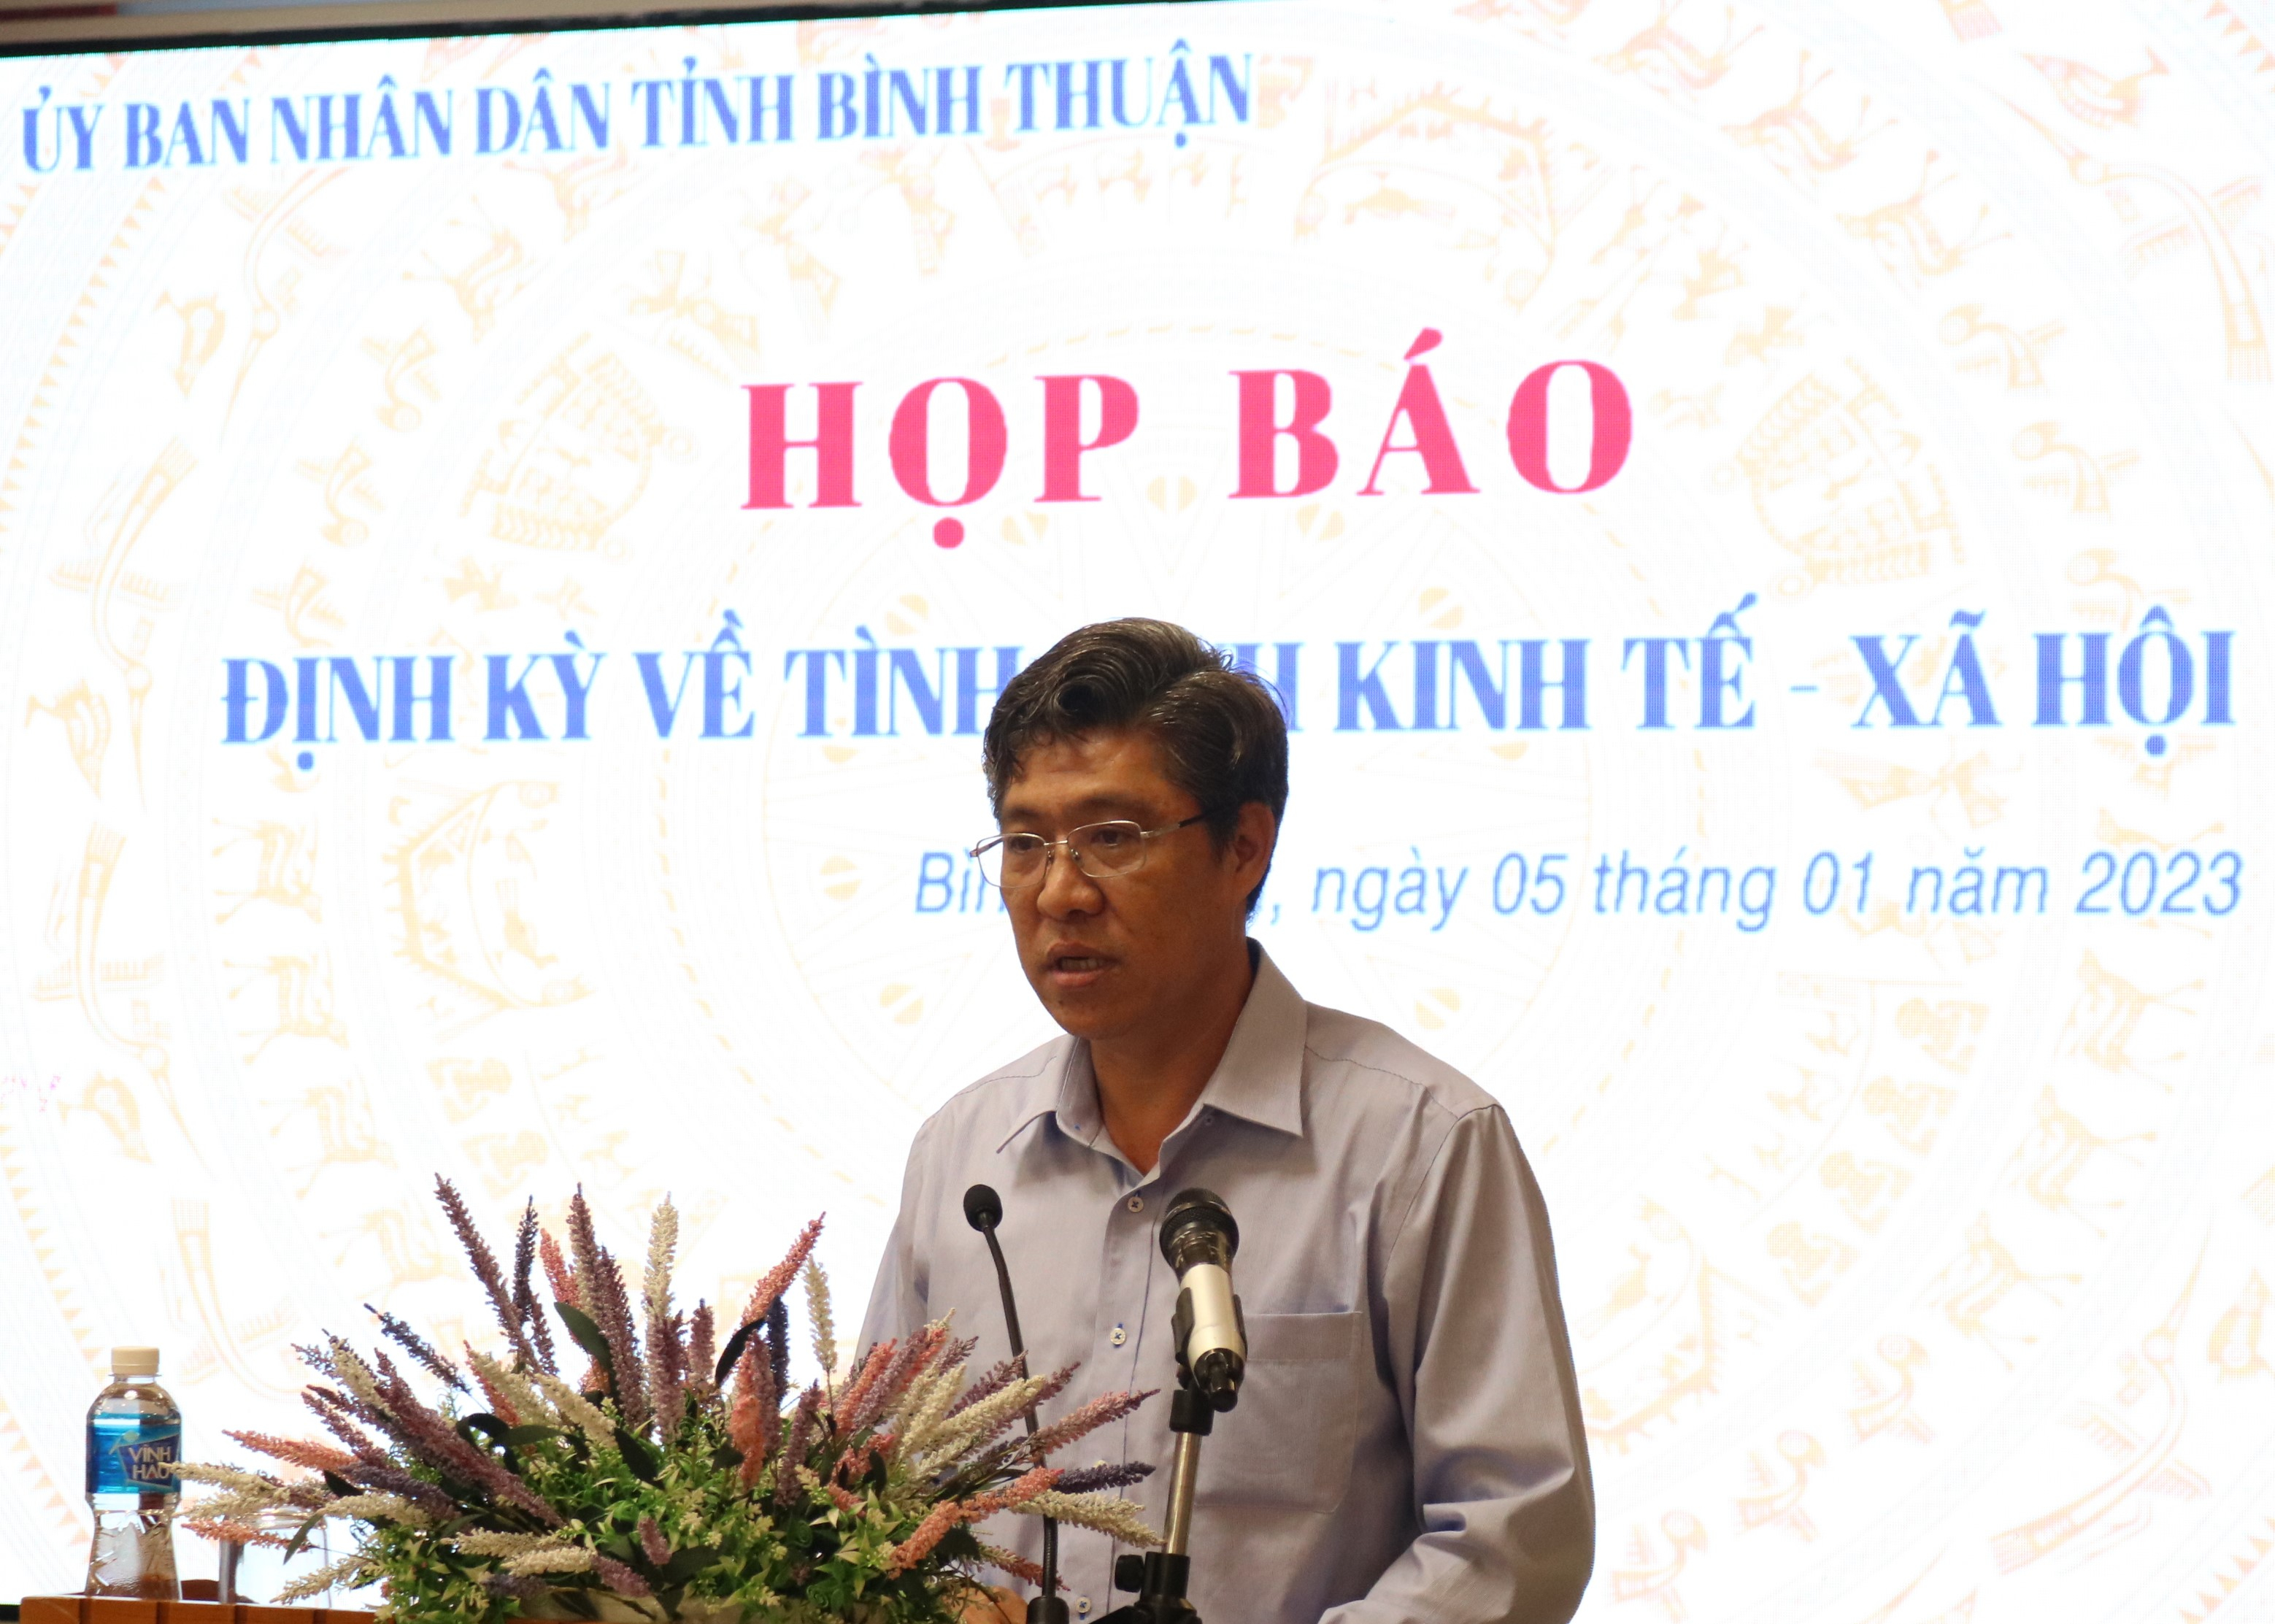 Phó Chủ tịch UBND tỉnh Bình Thuận Nguyễn Minh phát biểu tại buổi họp báo.